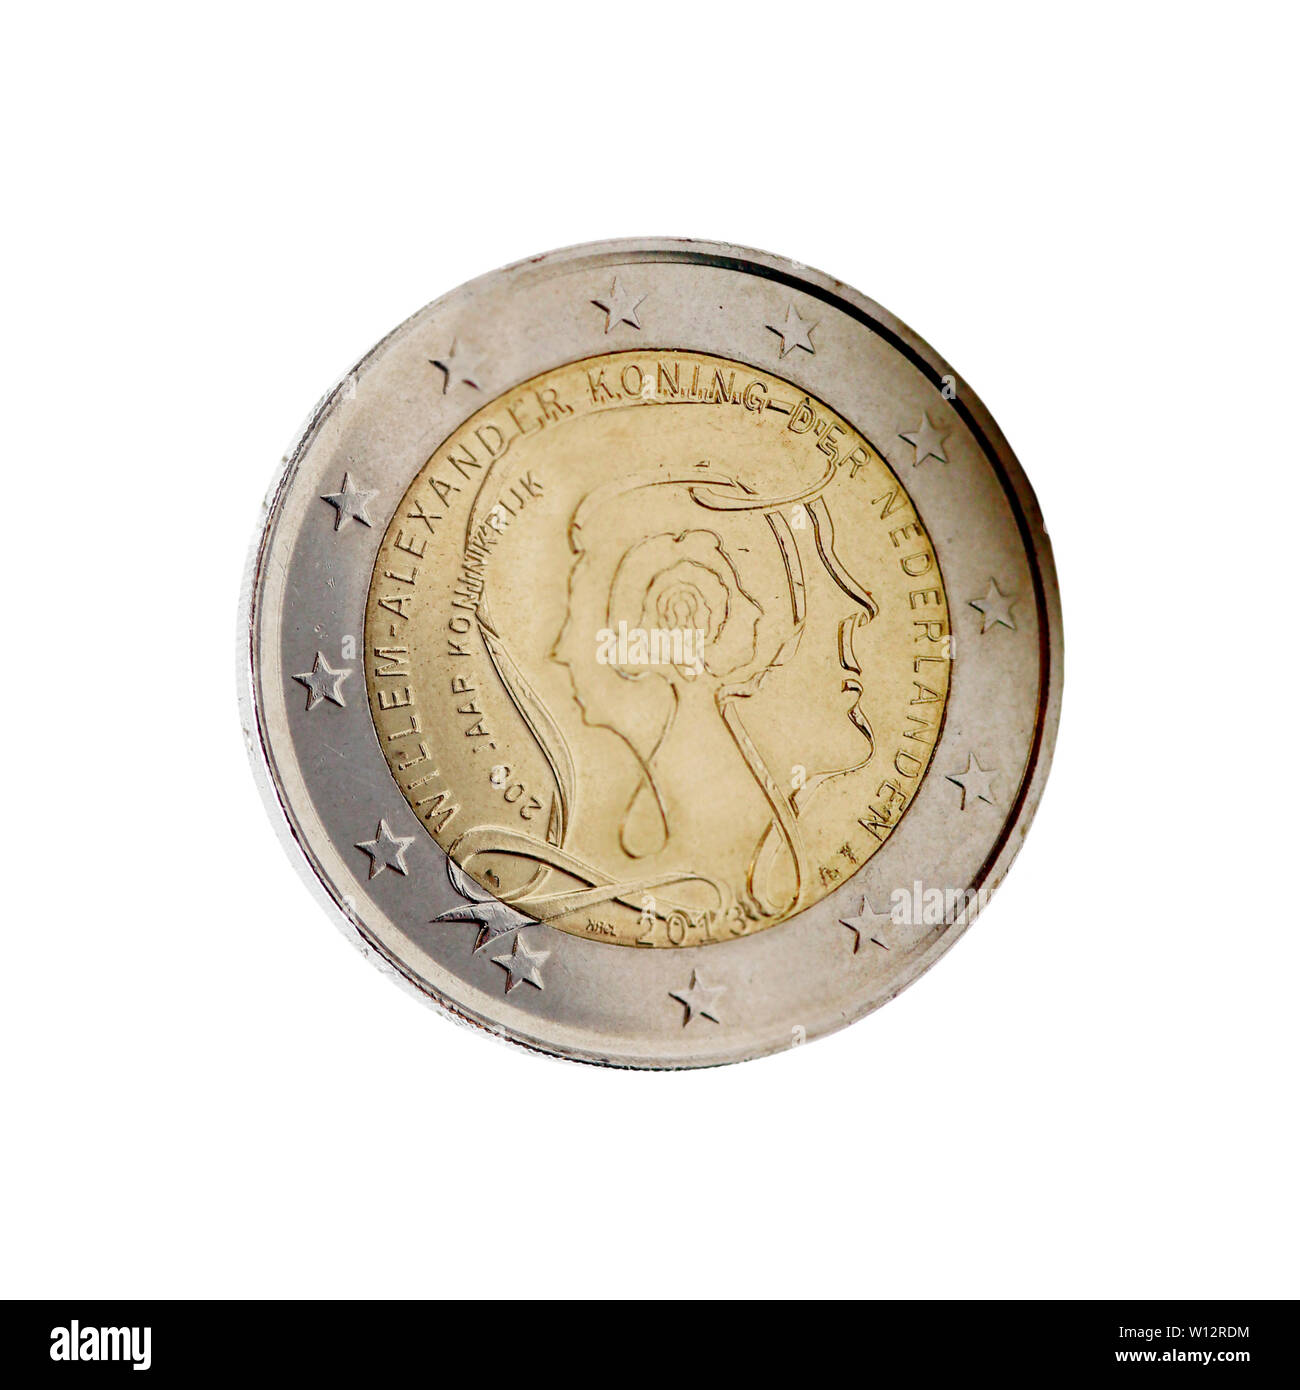 Niederländische 2-Euro-Münze mit König Willem-Alexander Foto Stock